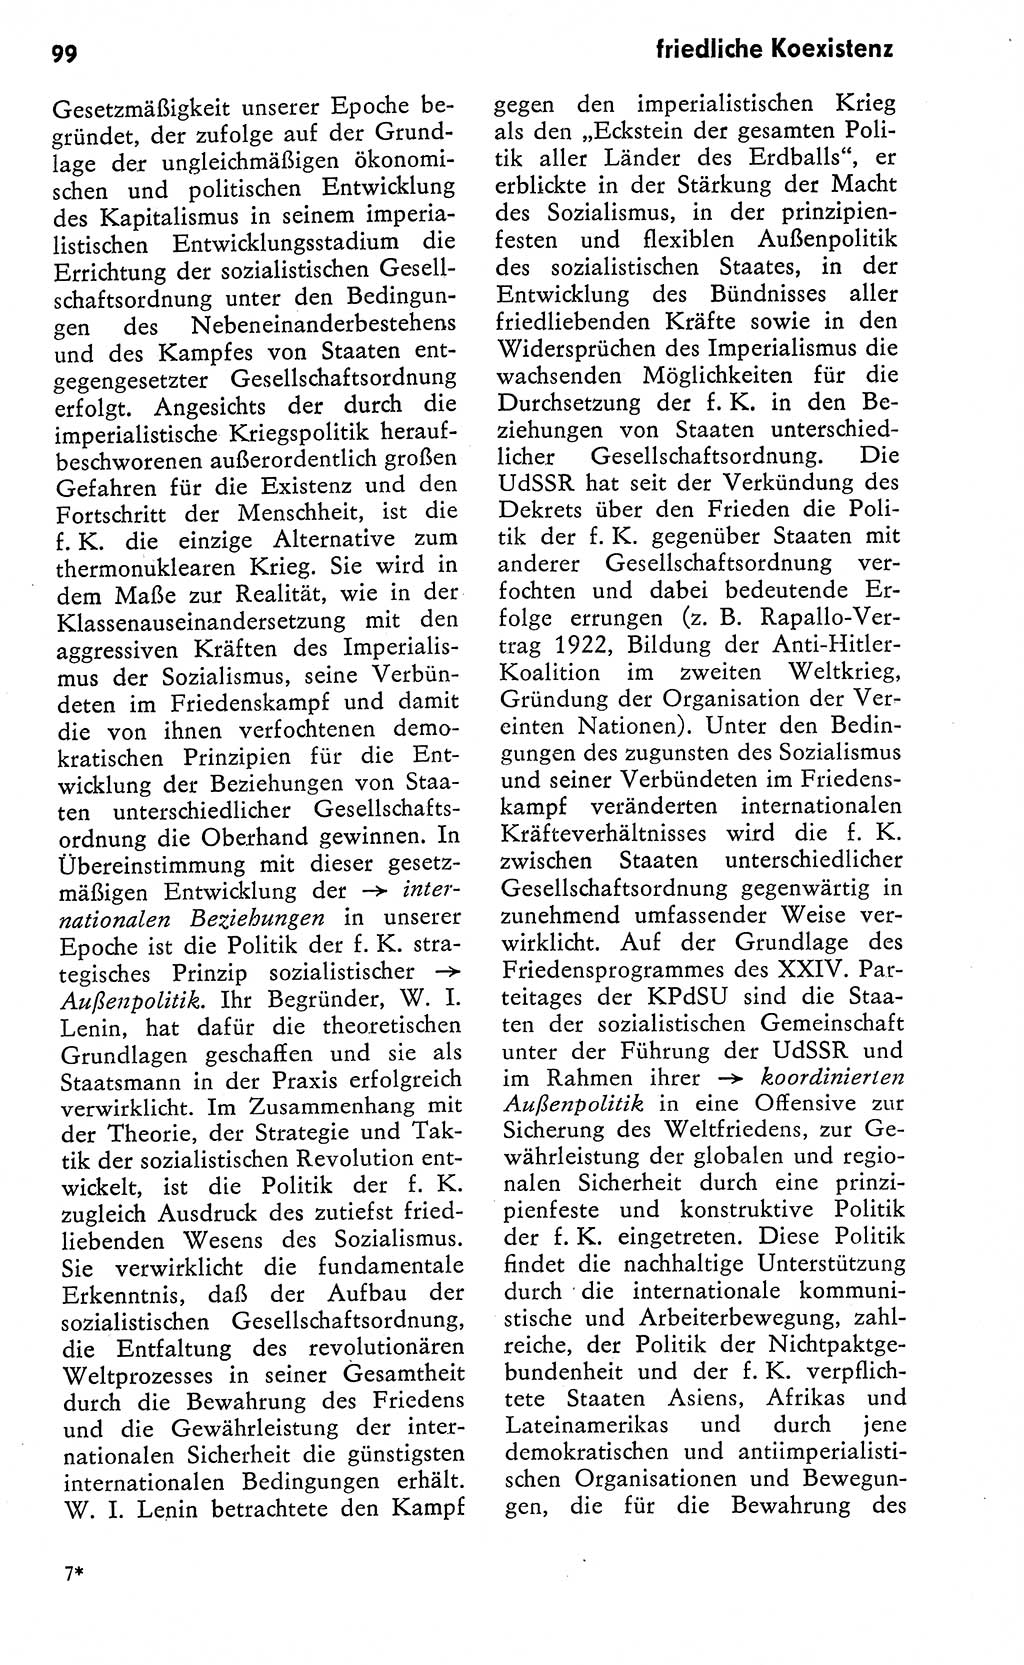 Wörterbuch zum sozialistischen Staat [Deutsche Demokratische Republik (DDR)] 1974, Seite 99 (Wb. soz. St. DDR 1974, S. 99)